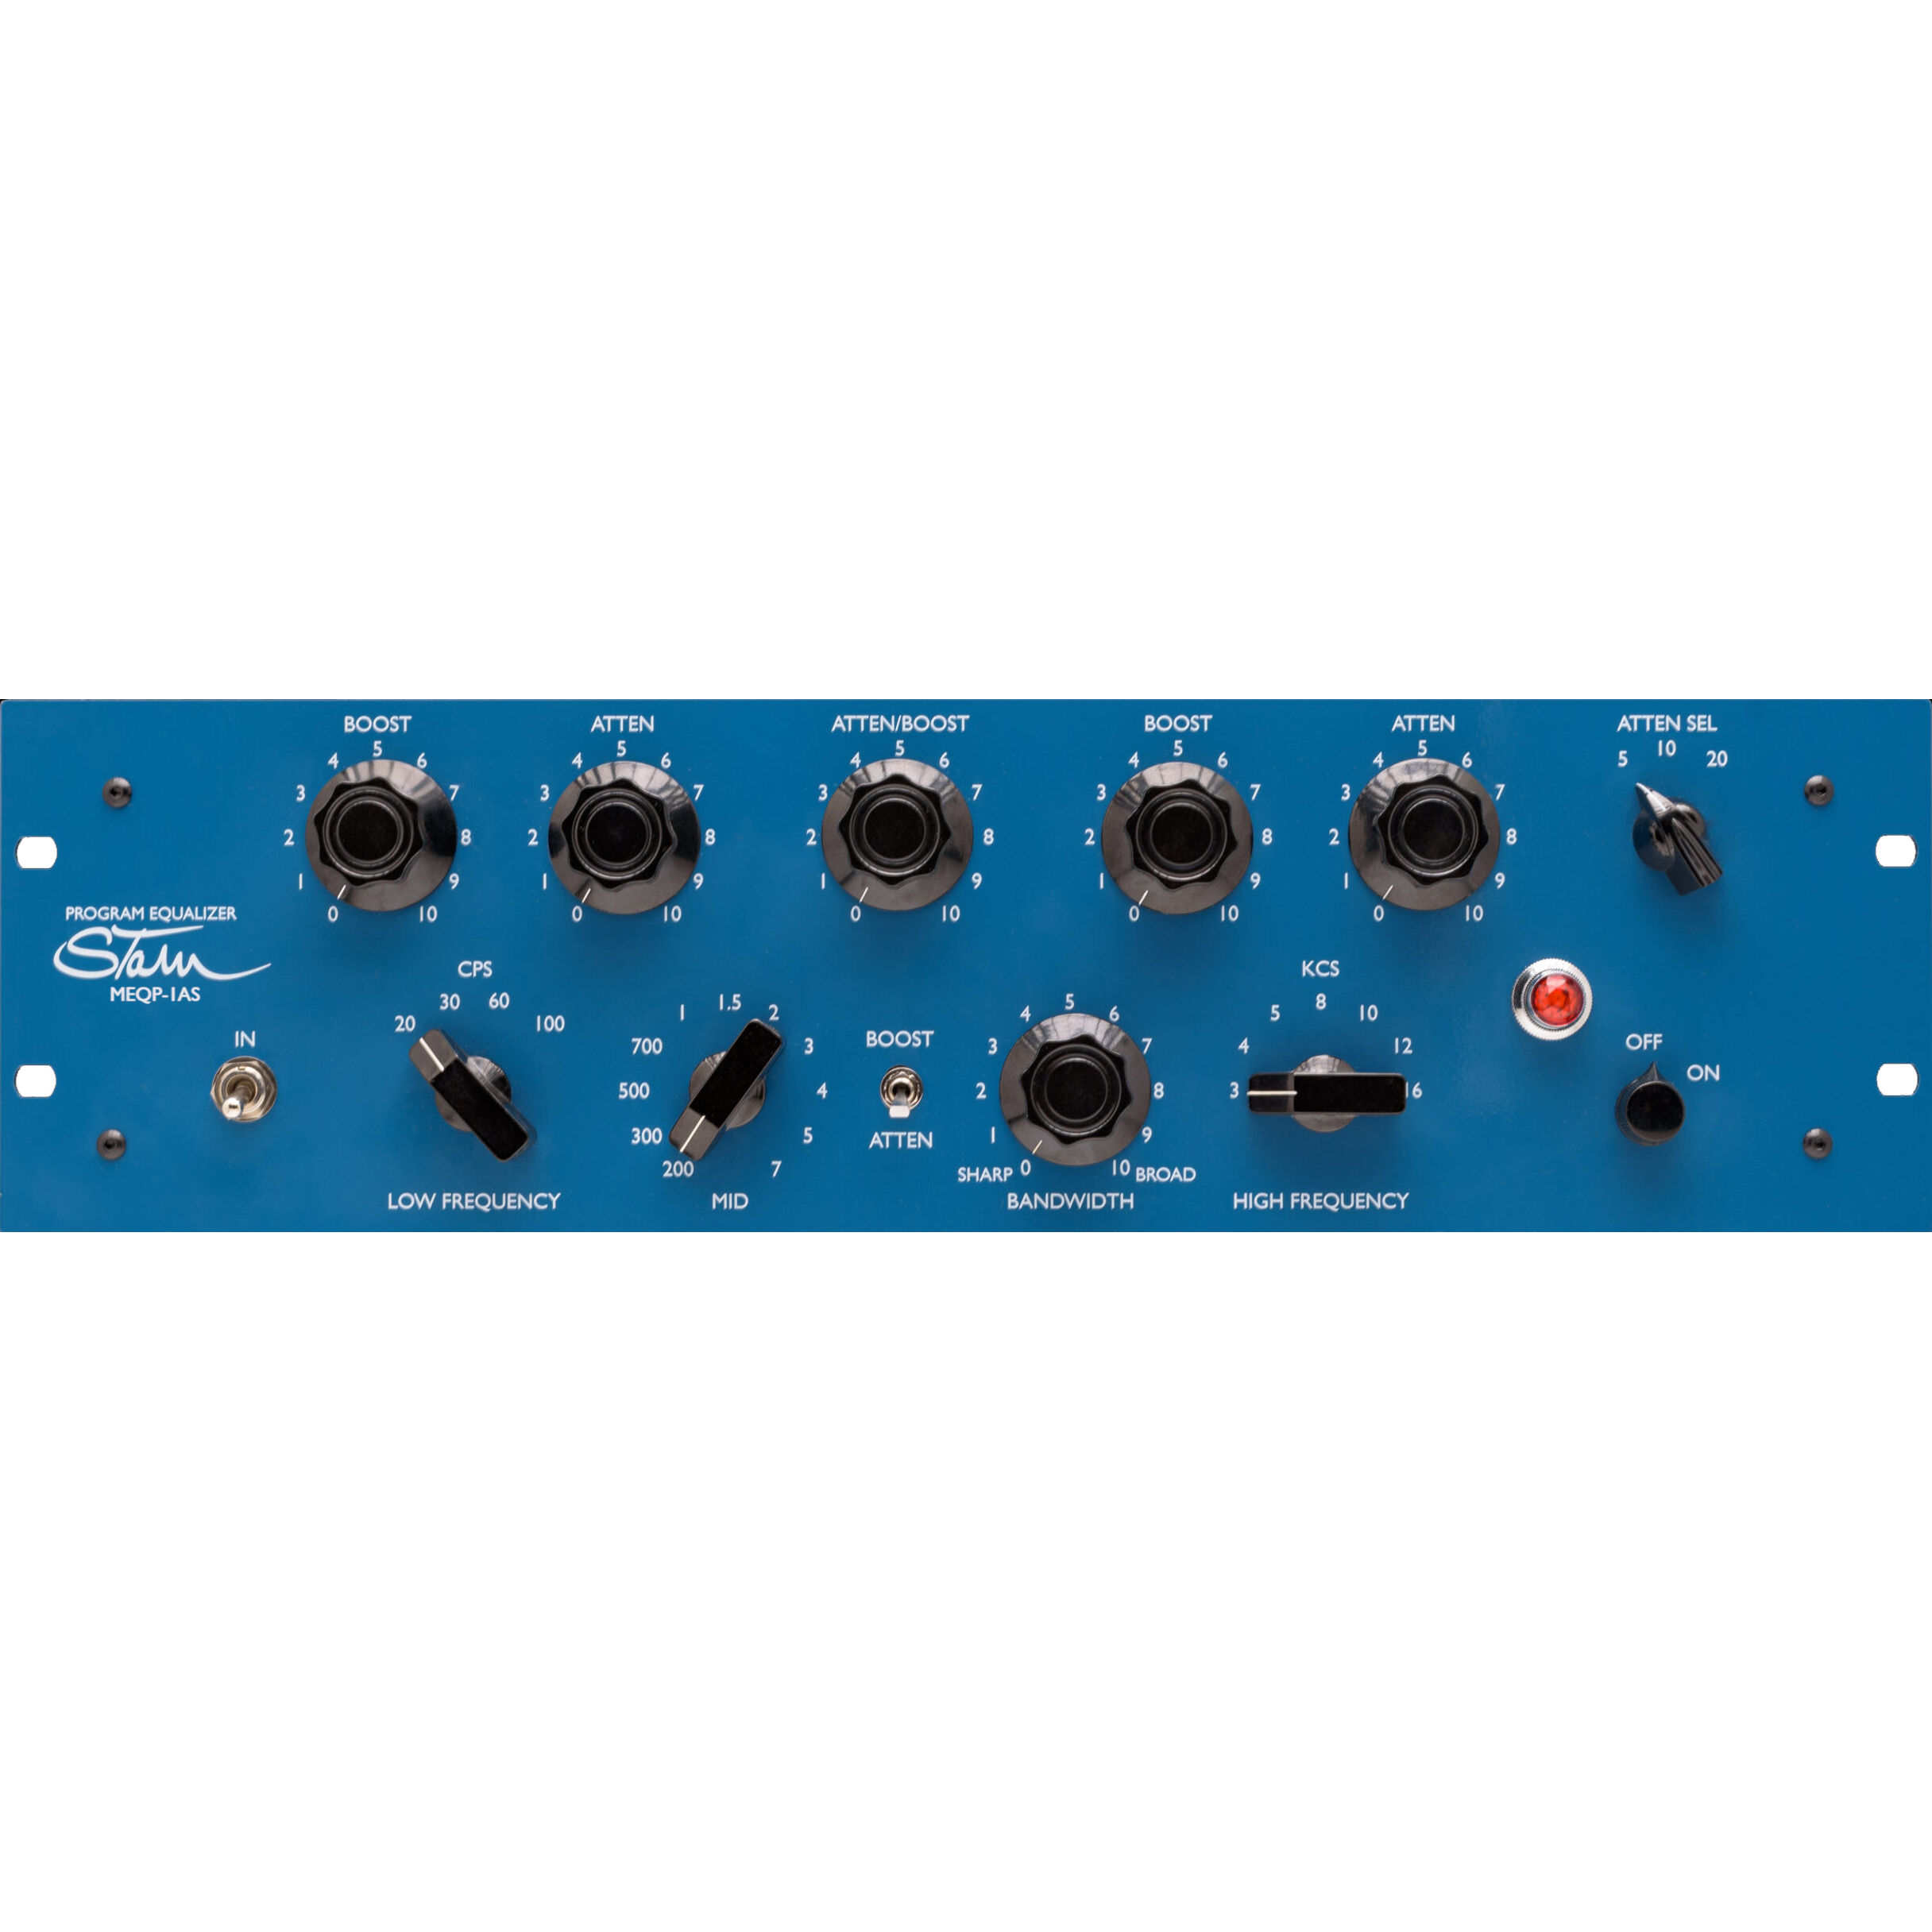 Stam Audio MEQP-1AS | Ecualizador de válvulas analógico